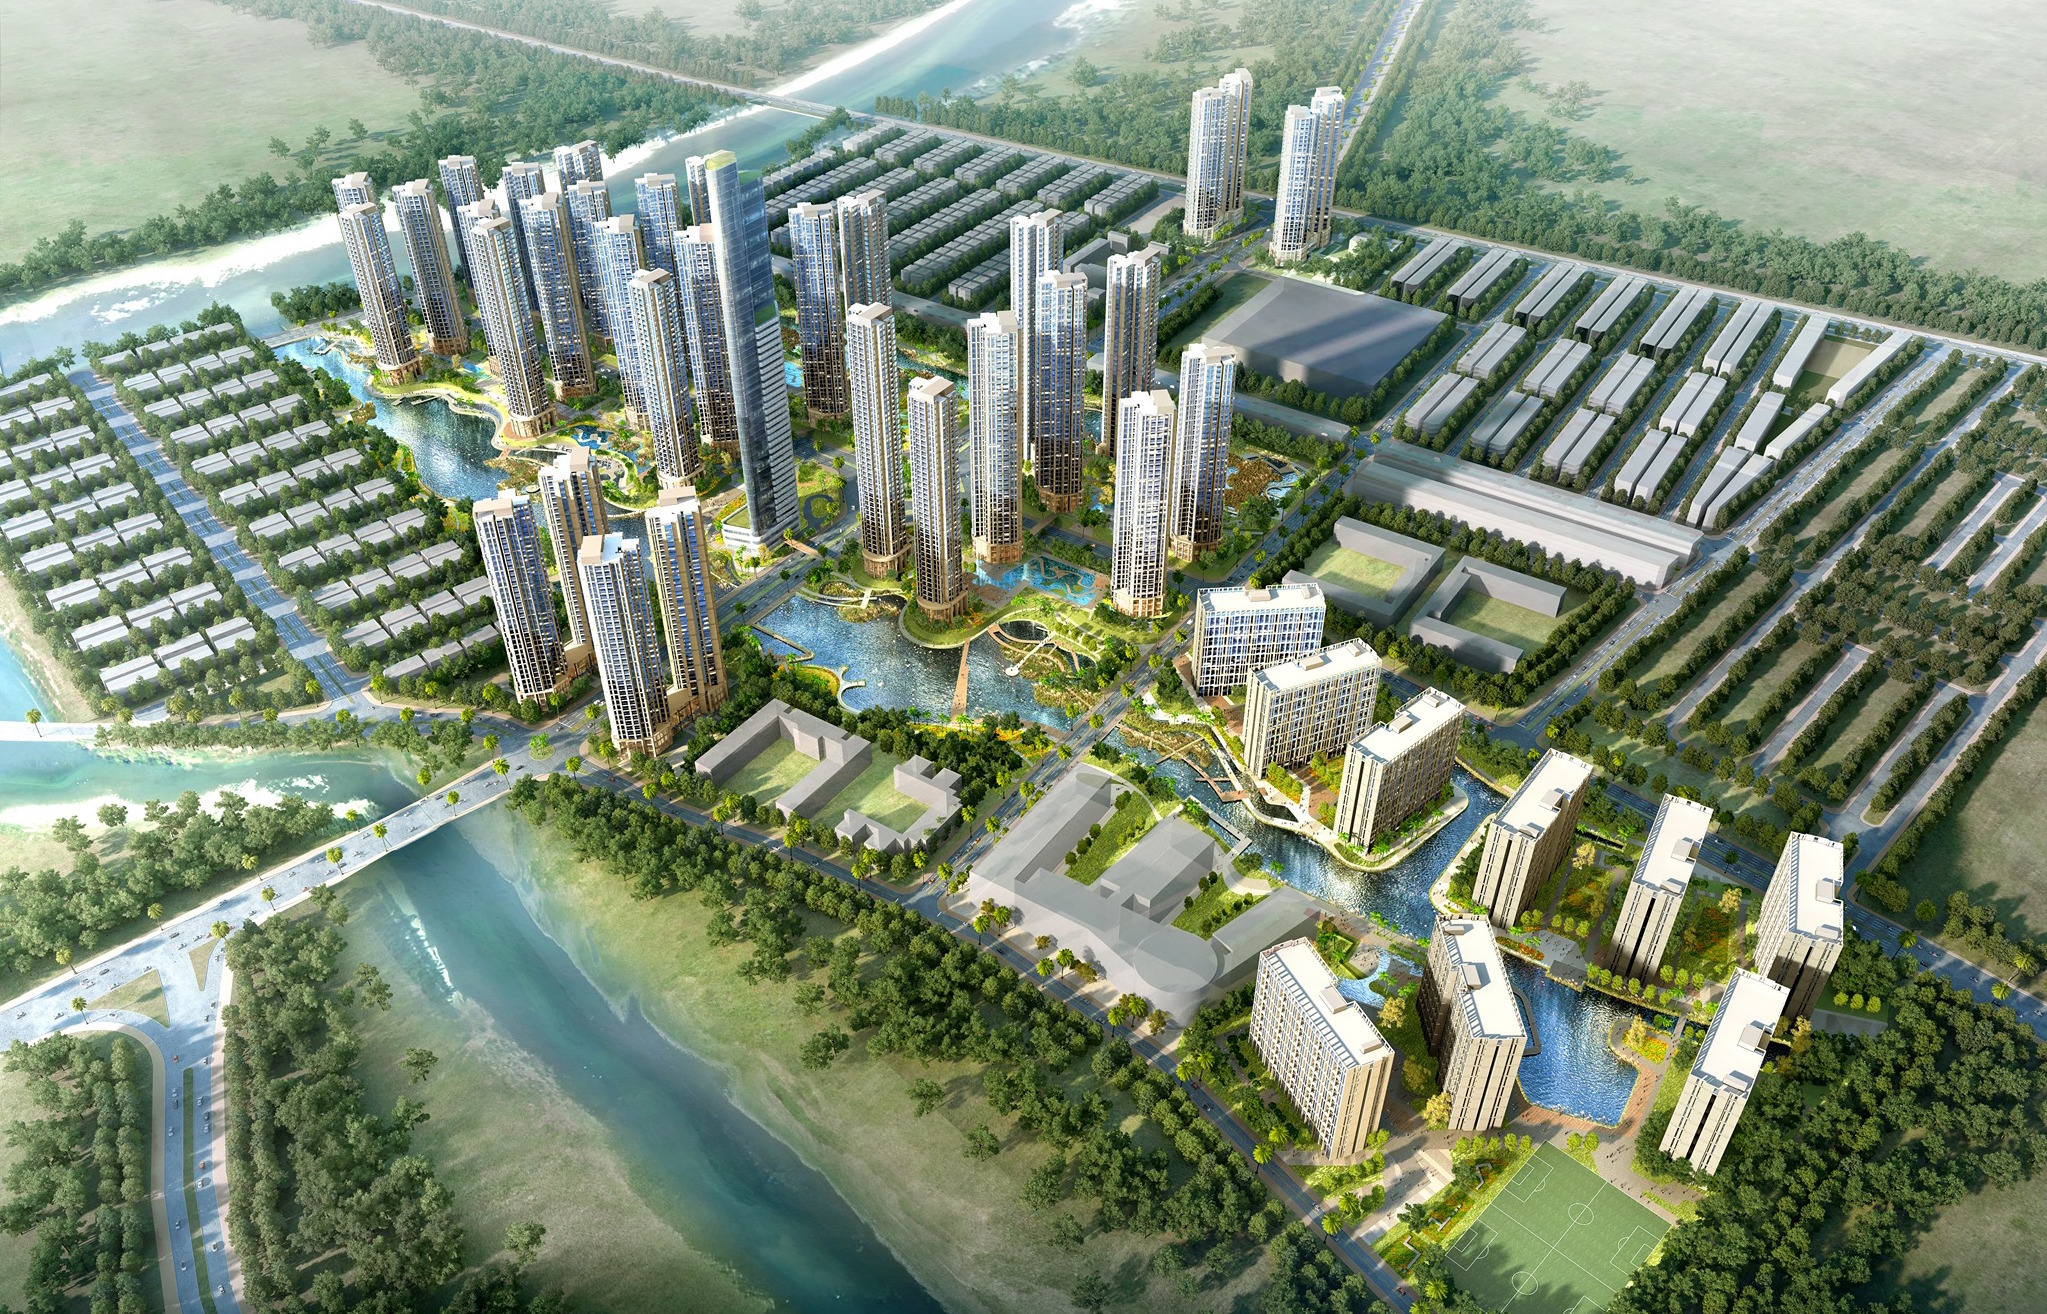 Masterise mua lại dự án Khu đô thị Sài Gòn Bình An